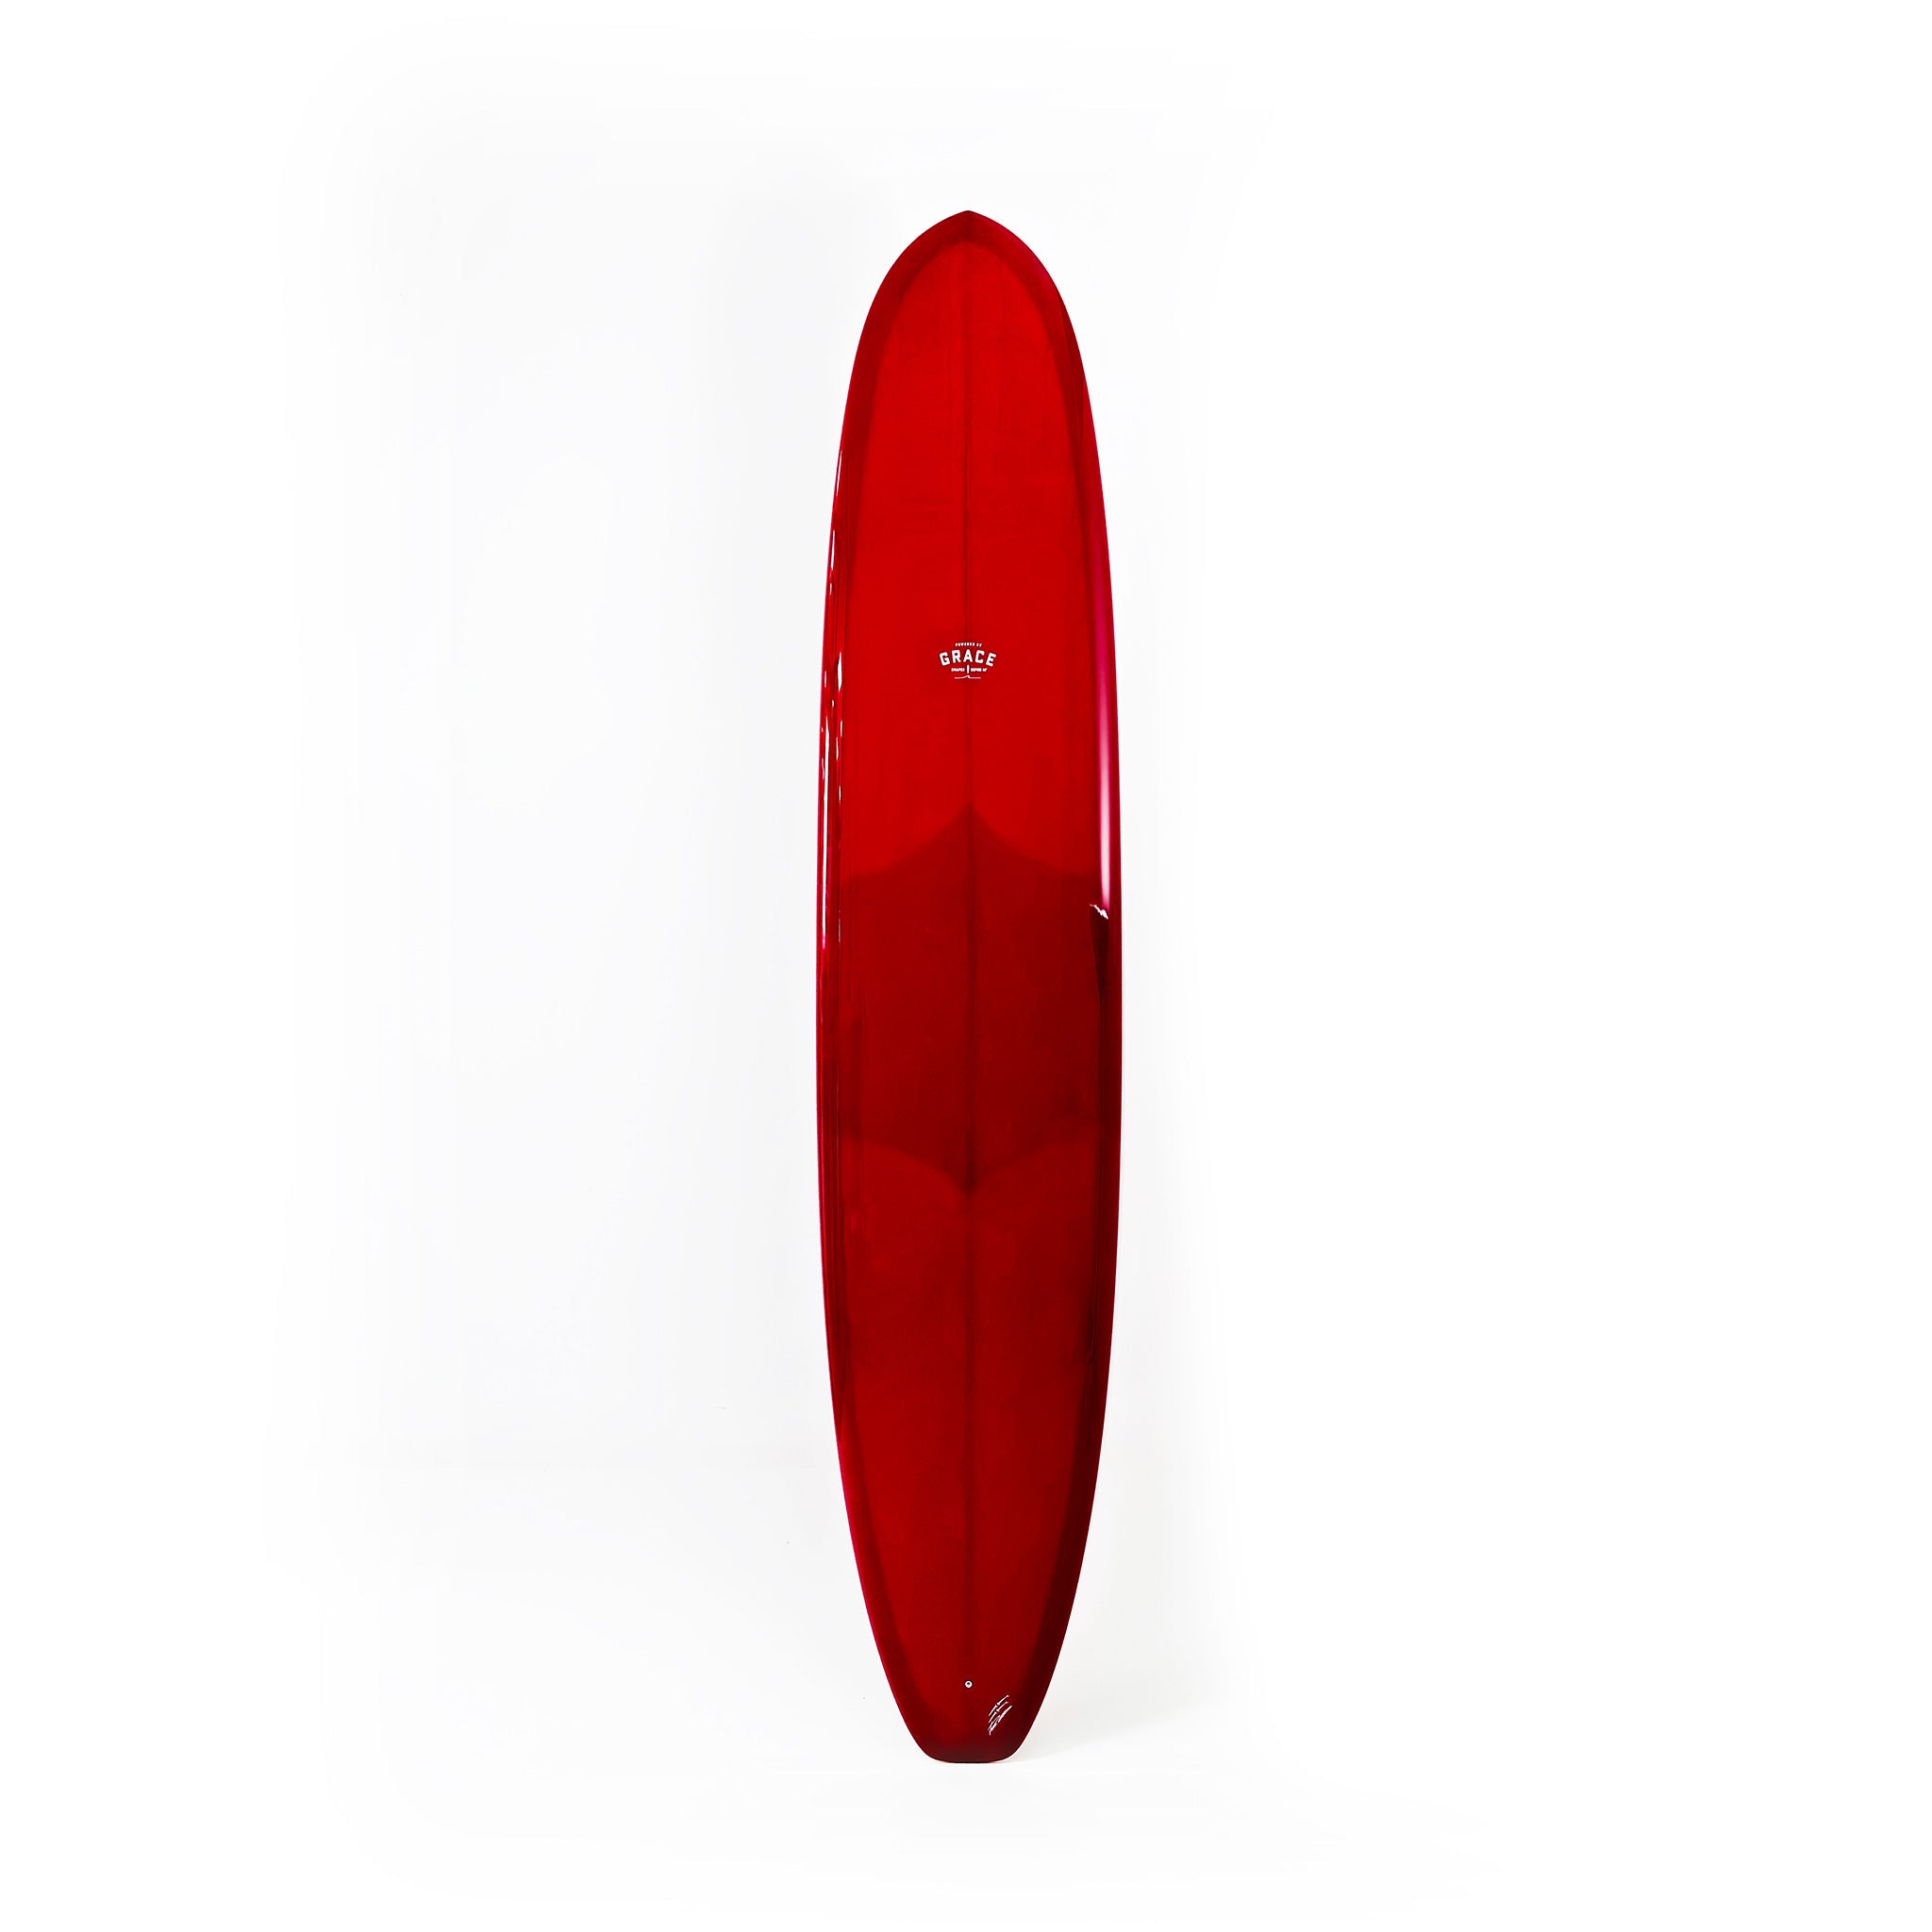 Phil Grace Surfboard Logstar 9'4 x 23 x 3 x 73.4L - LGB028